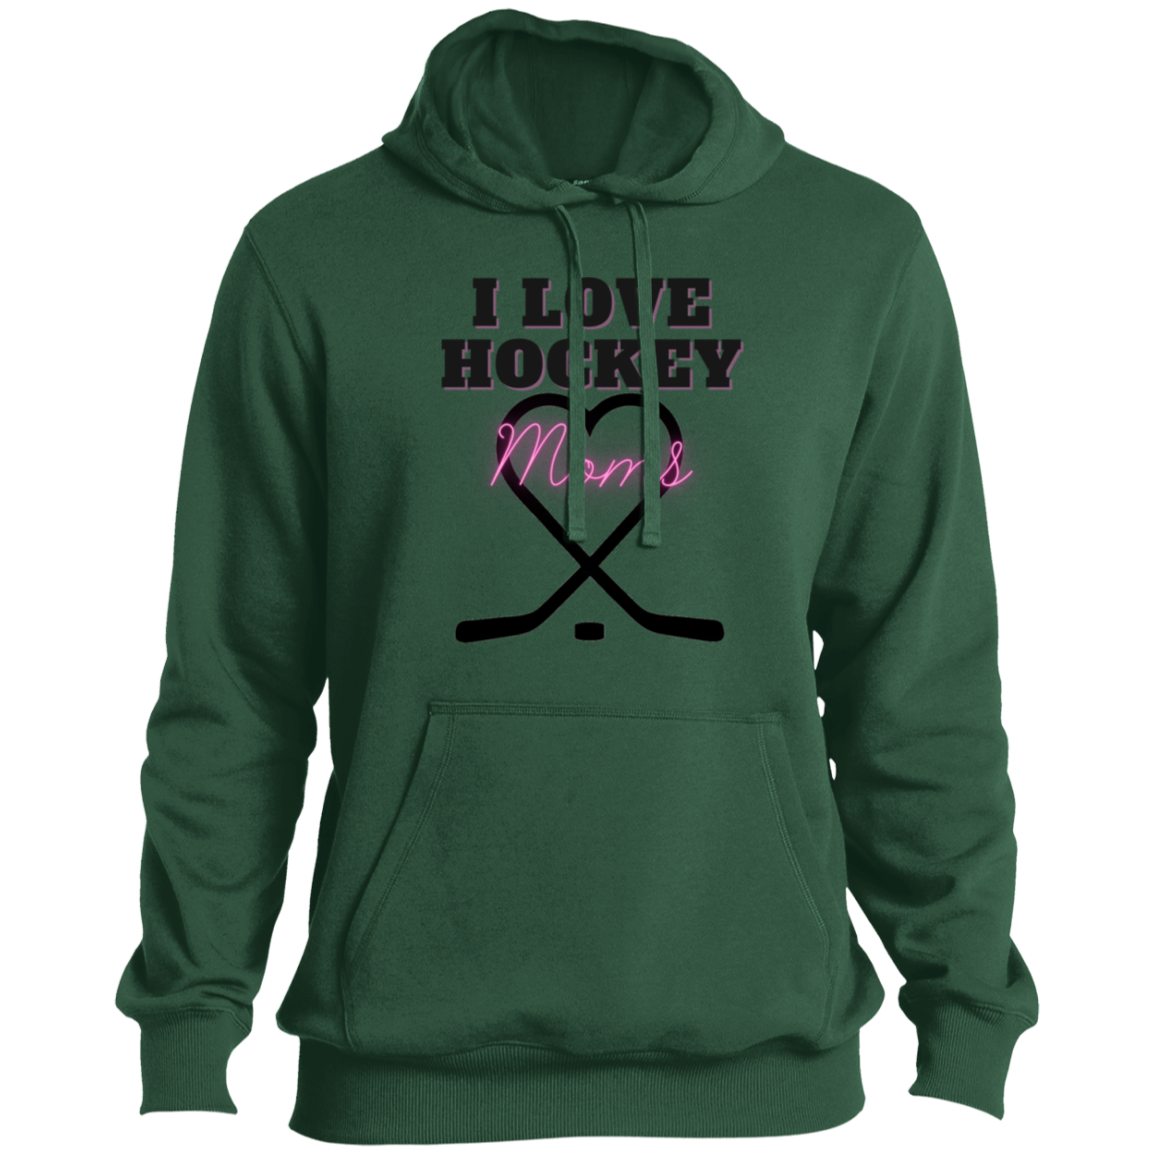 I Love Hockey Moms- Men's Hockey Wildcard Series Hoodie